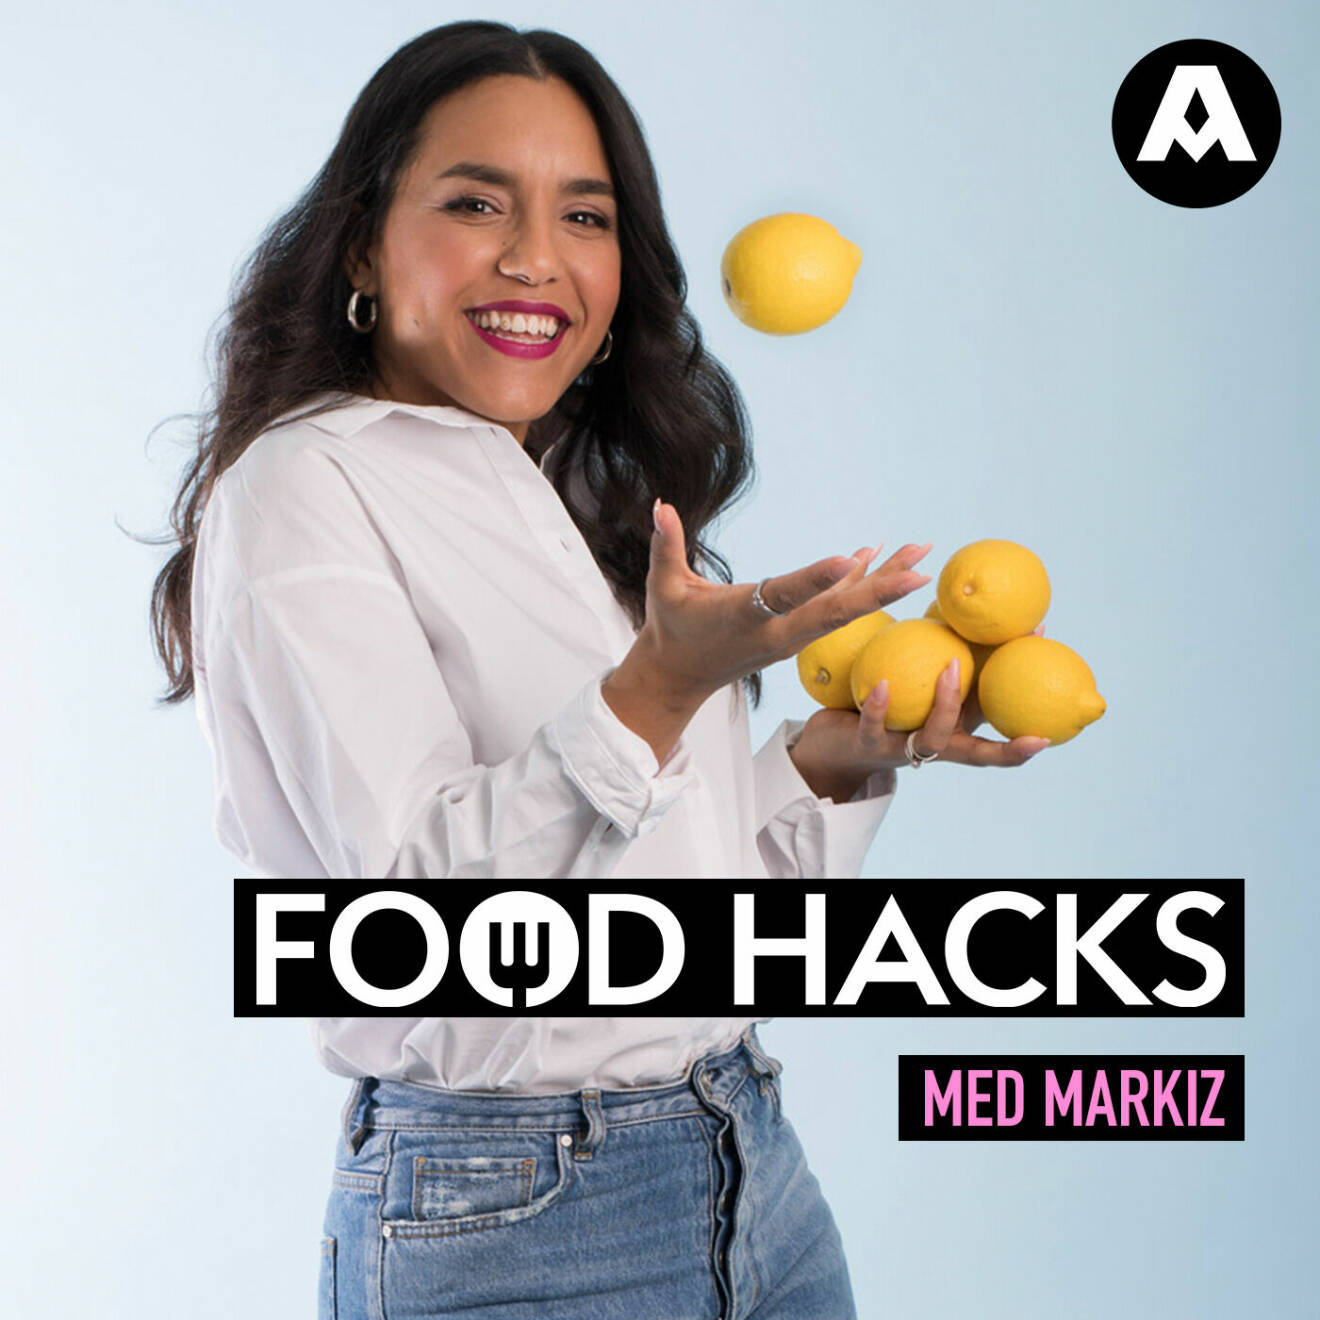 Markiz nya podd Food Hacks